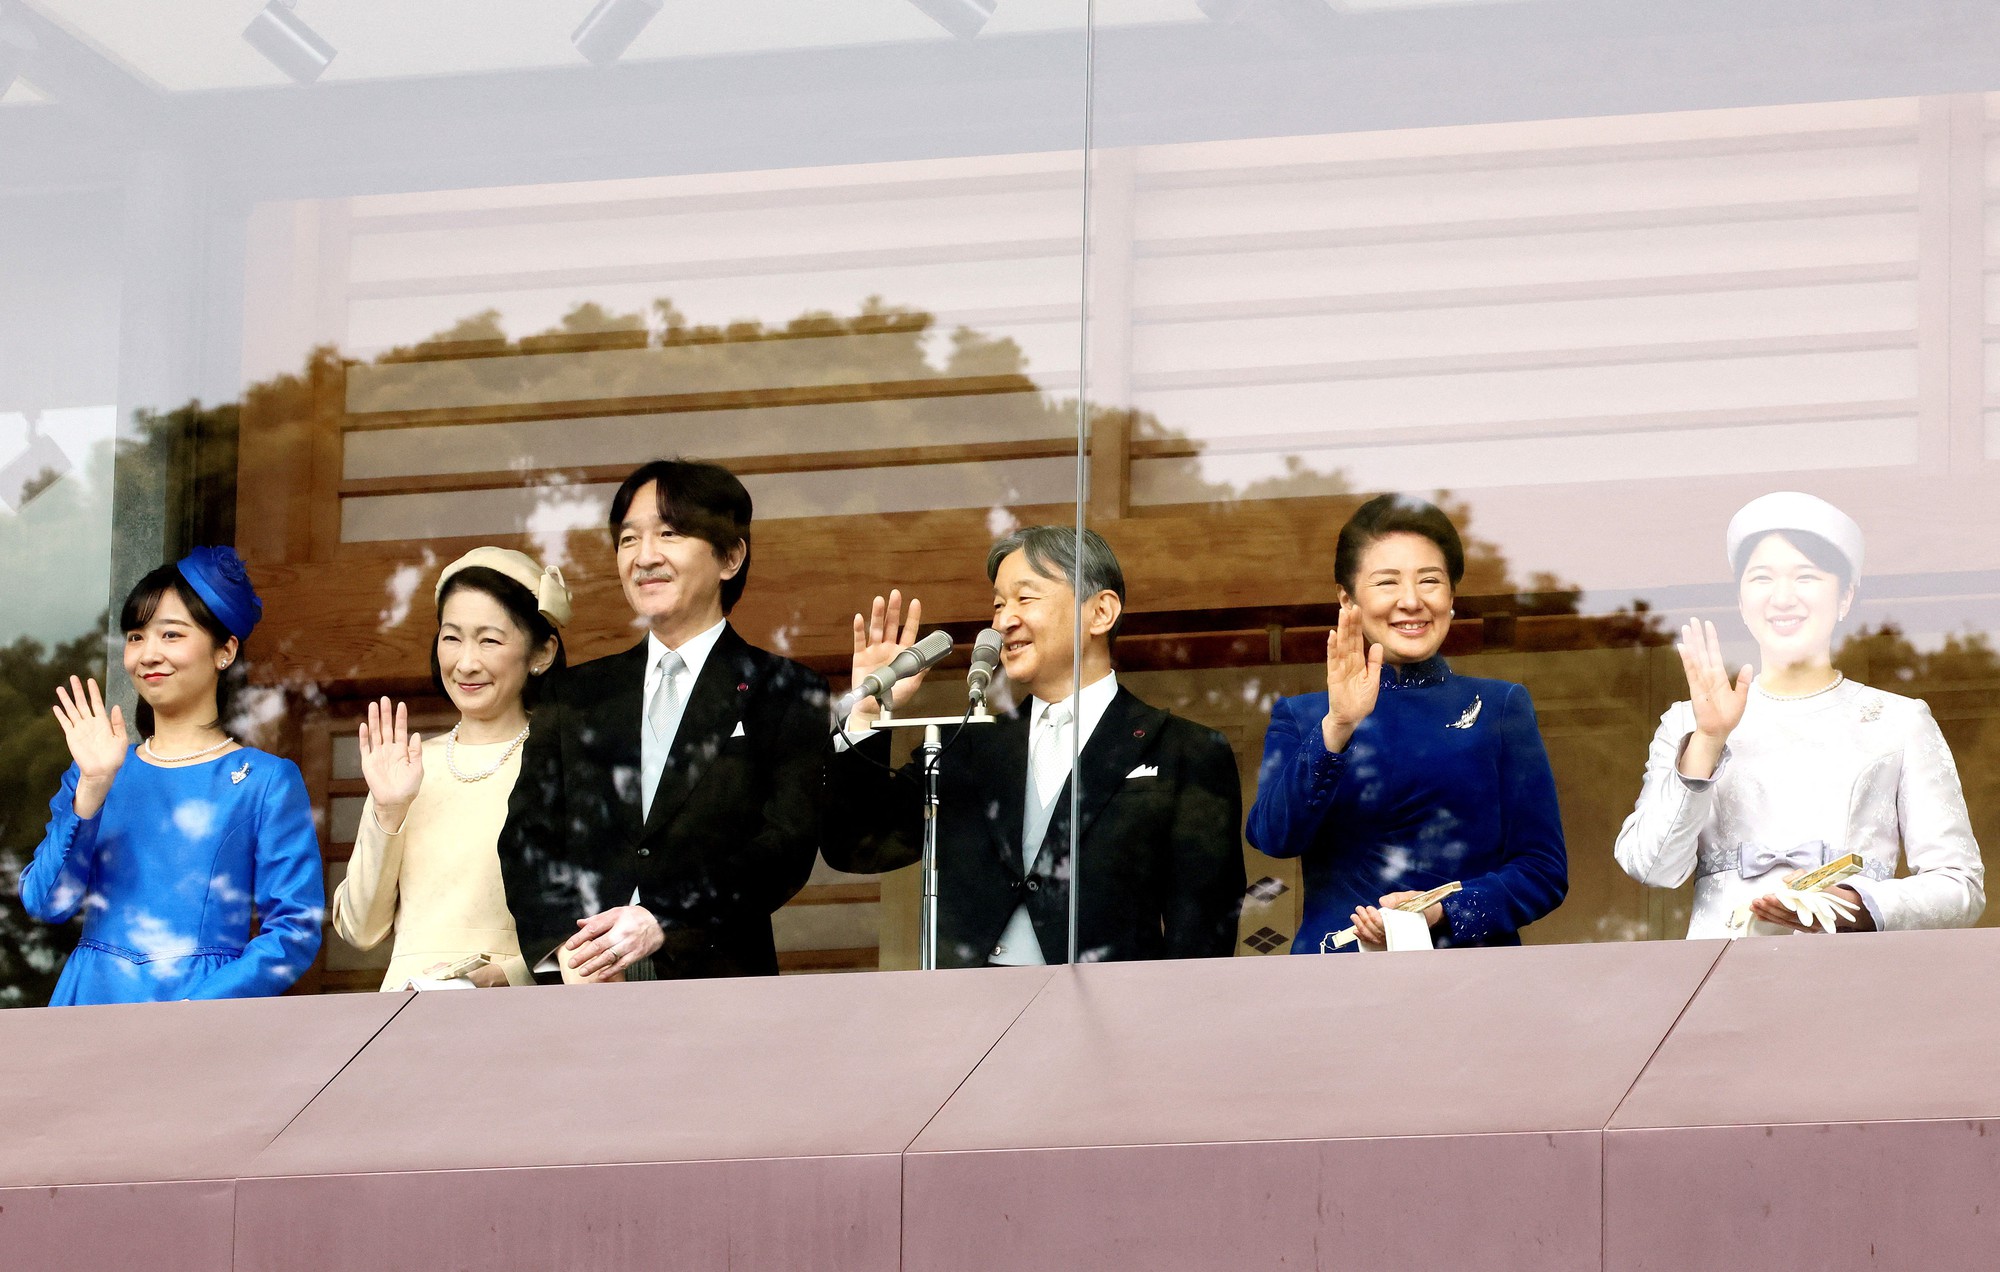 Hoàng gia Nhật Bản cùng xuất hiện tại sự kiện đặc biệt sau thời gian dài, nhan sắc 2 nàng công chúa gây bất ngờ